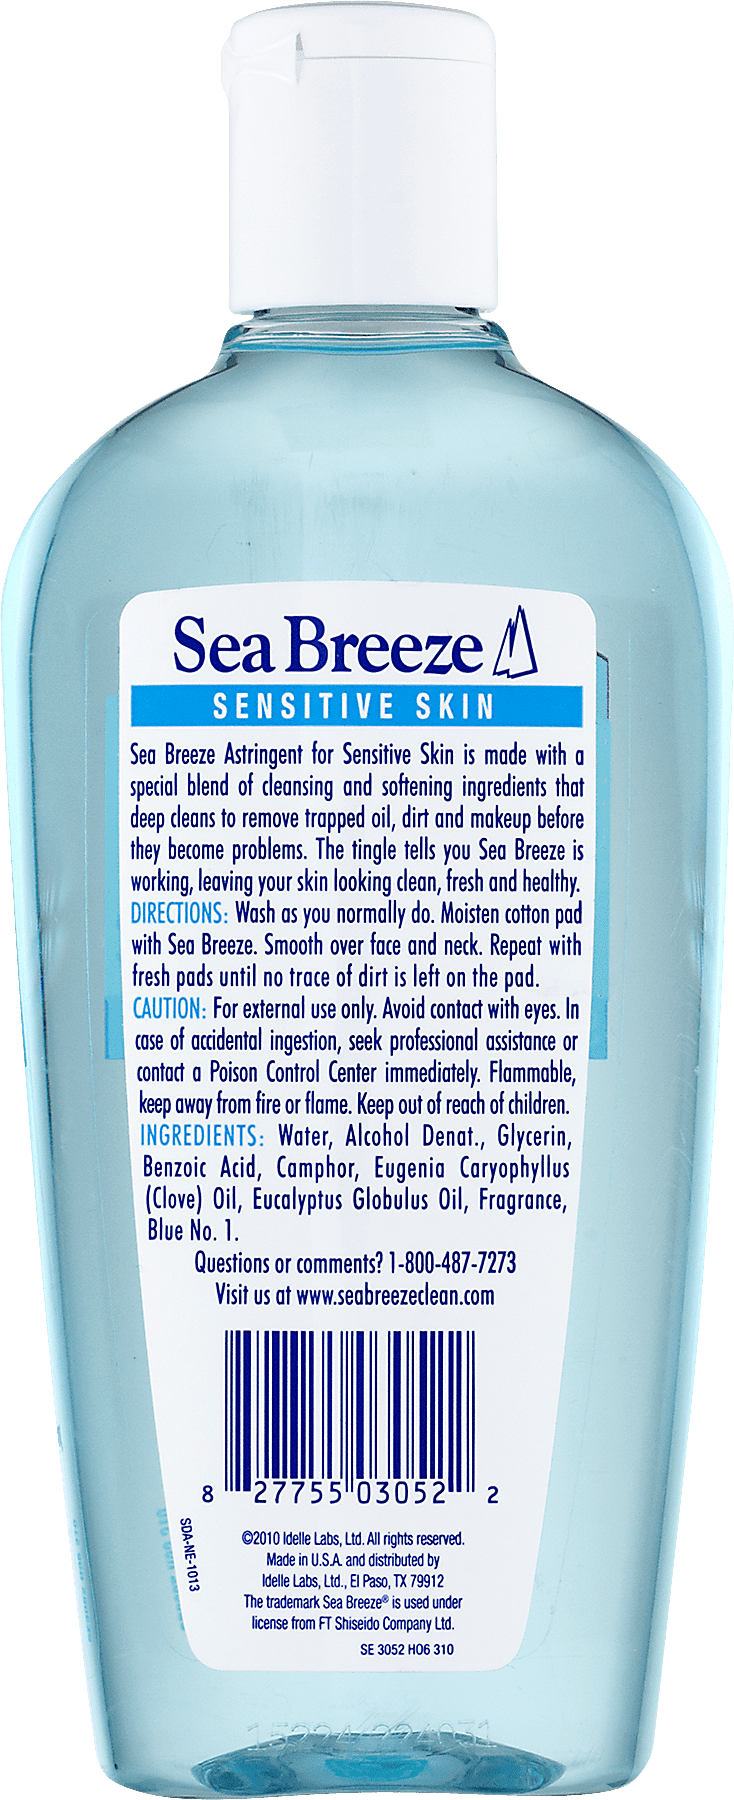 Sea Breeze Astringent Ingredients